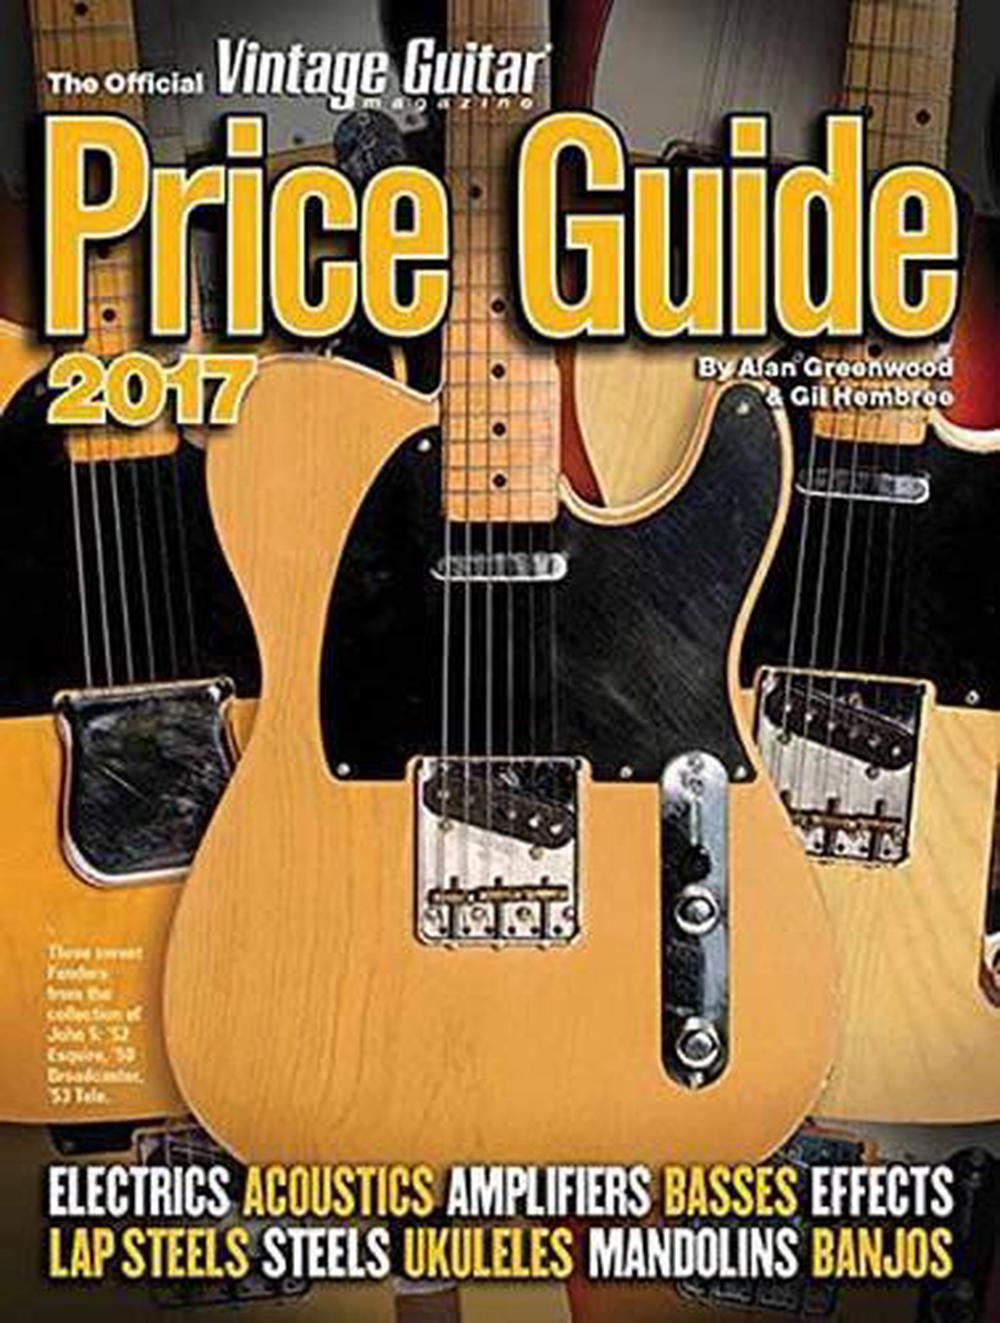 Vintage Guitar Magazine Price Guide 2017 Bk by Alan Greenwood Paperback